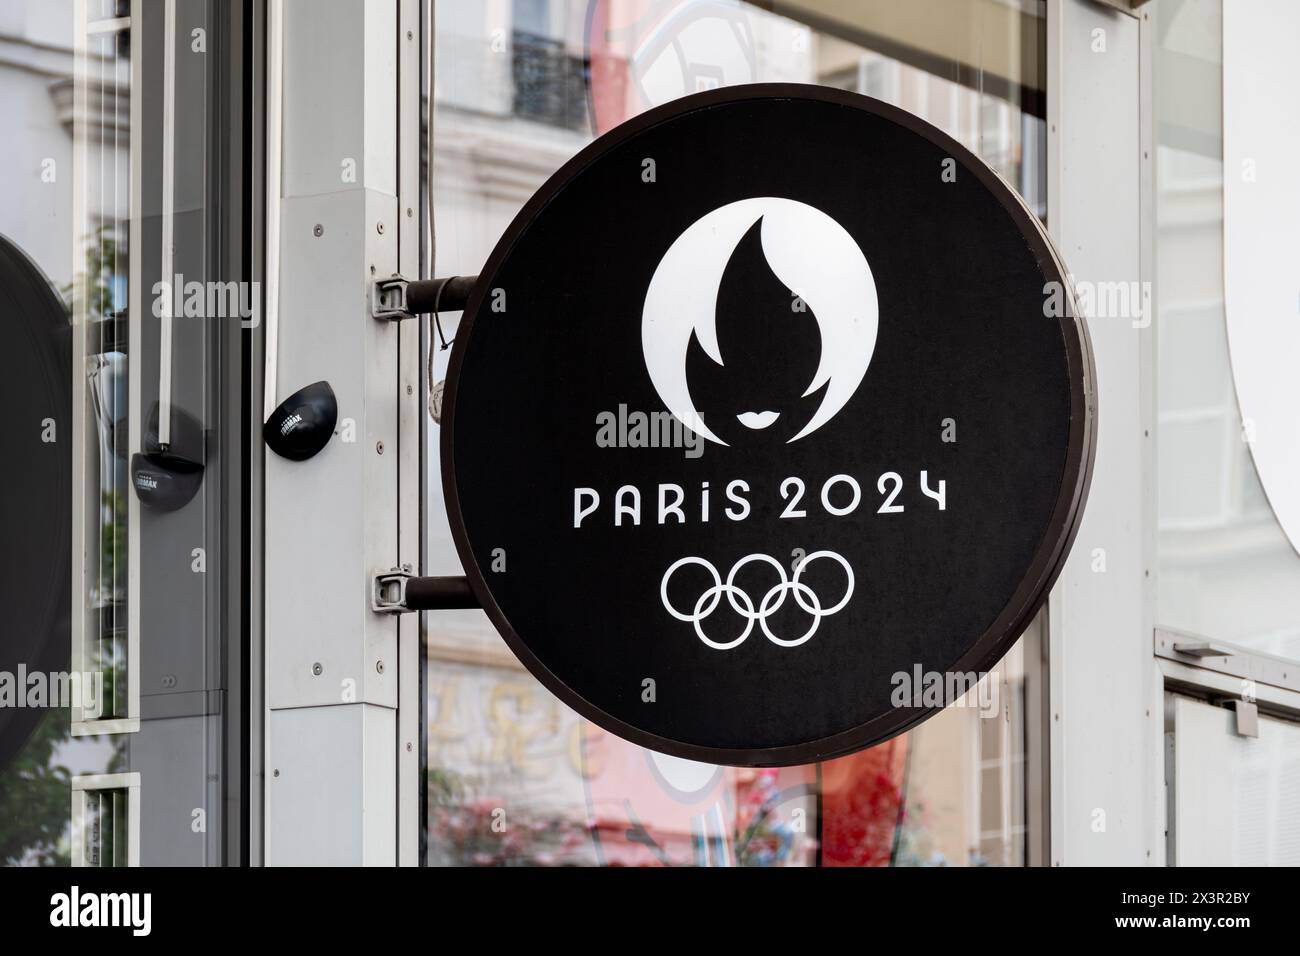 Enseigne de la boutique officielle des Jeux Olympiques et Paralympiques d'été de Paris 2024 avec le logo officiel et les anneaux olympiques, Paris, France Banque D'Images